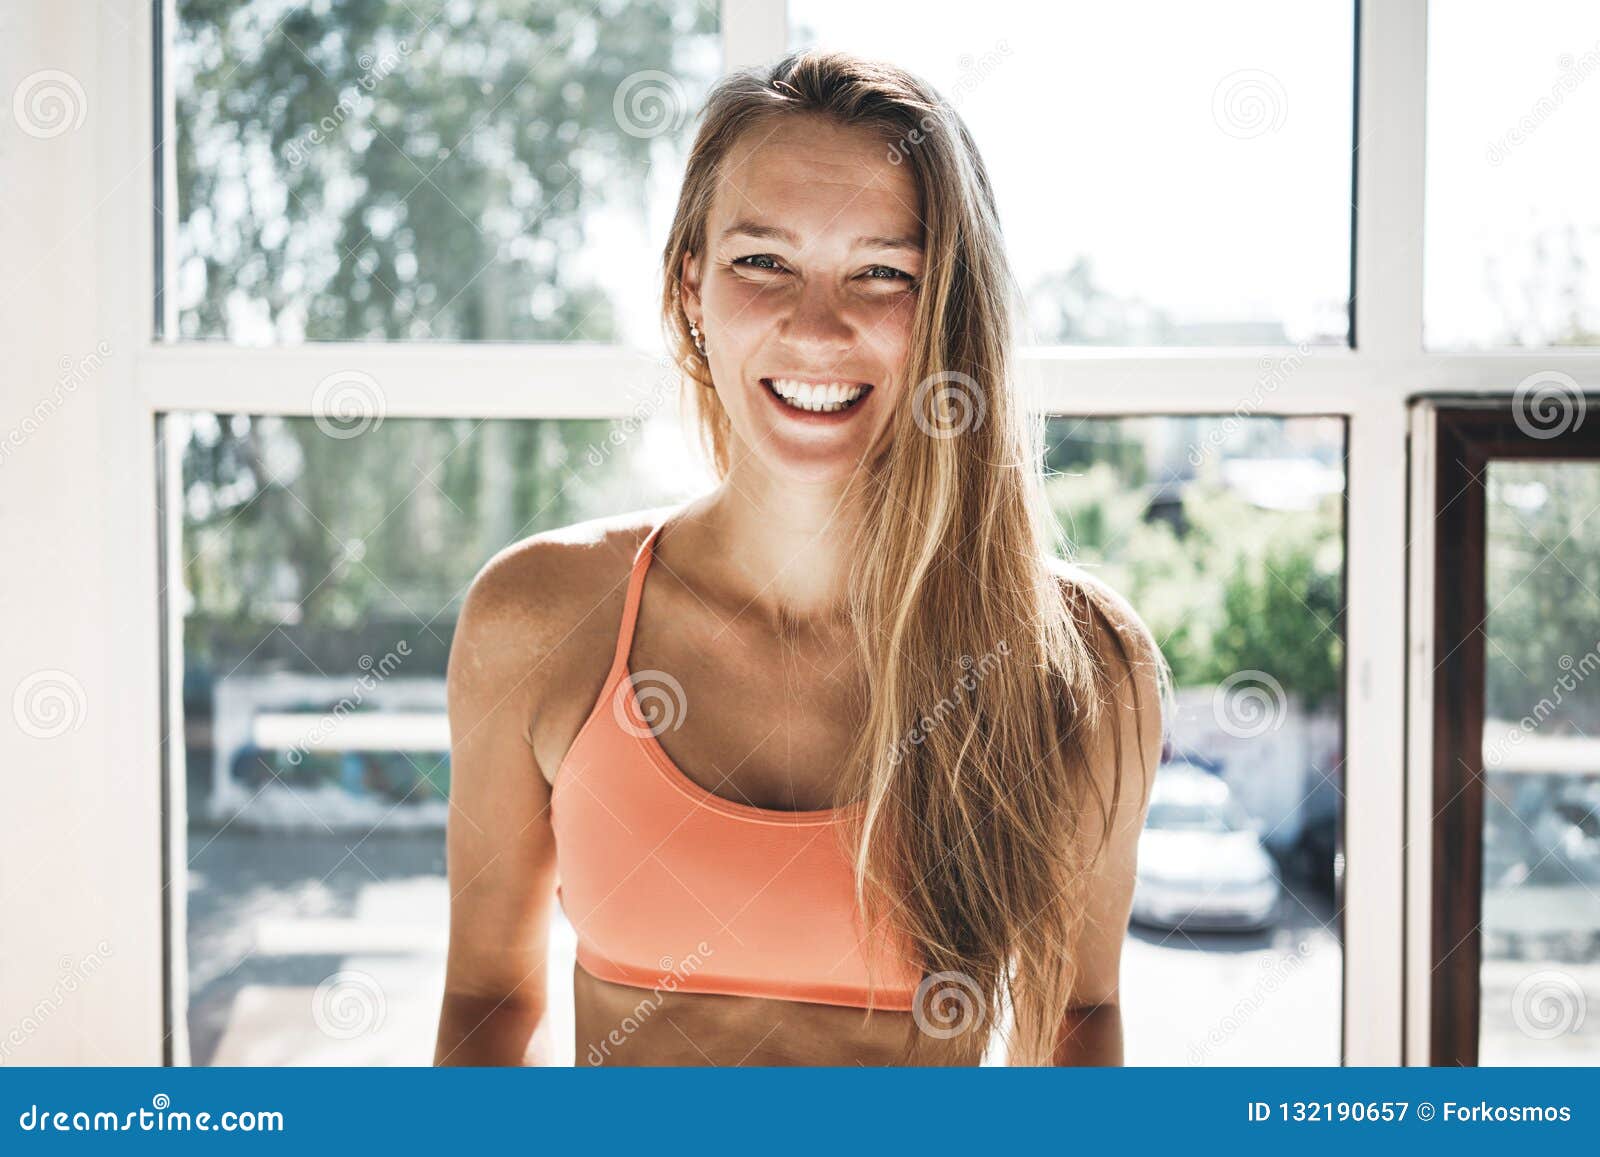 portrait of sunburn fit woman wearing sportwear in sunny white gym